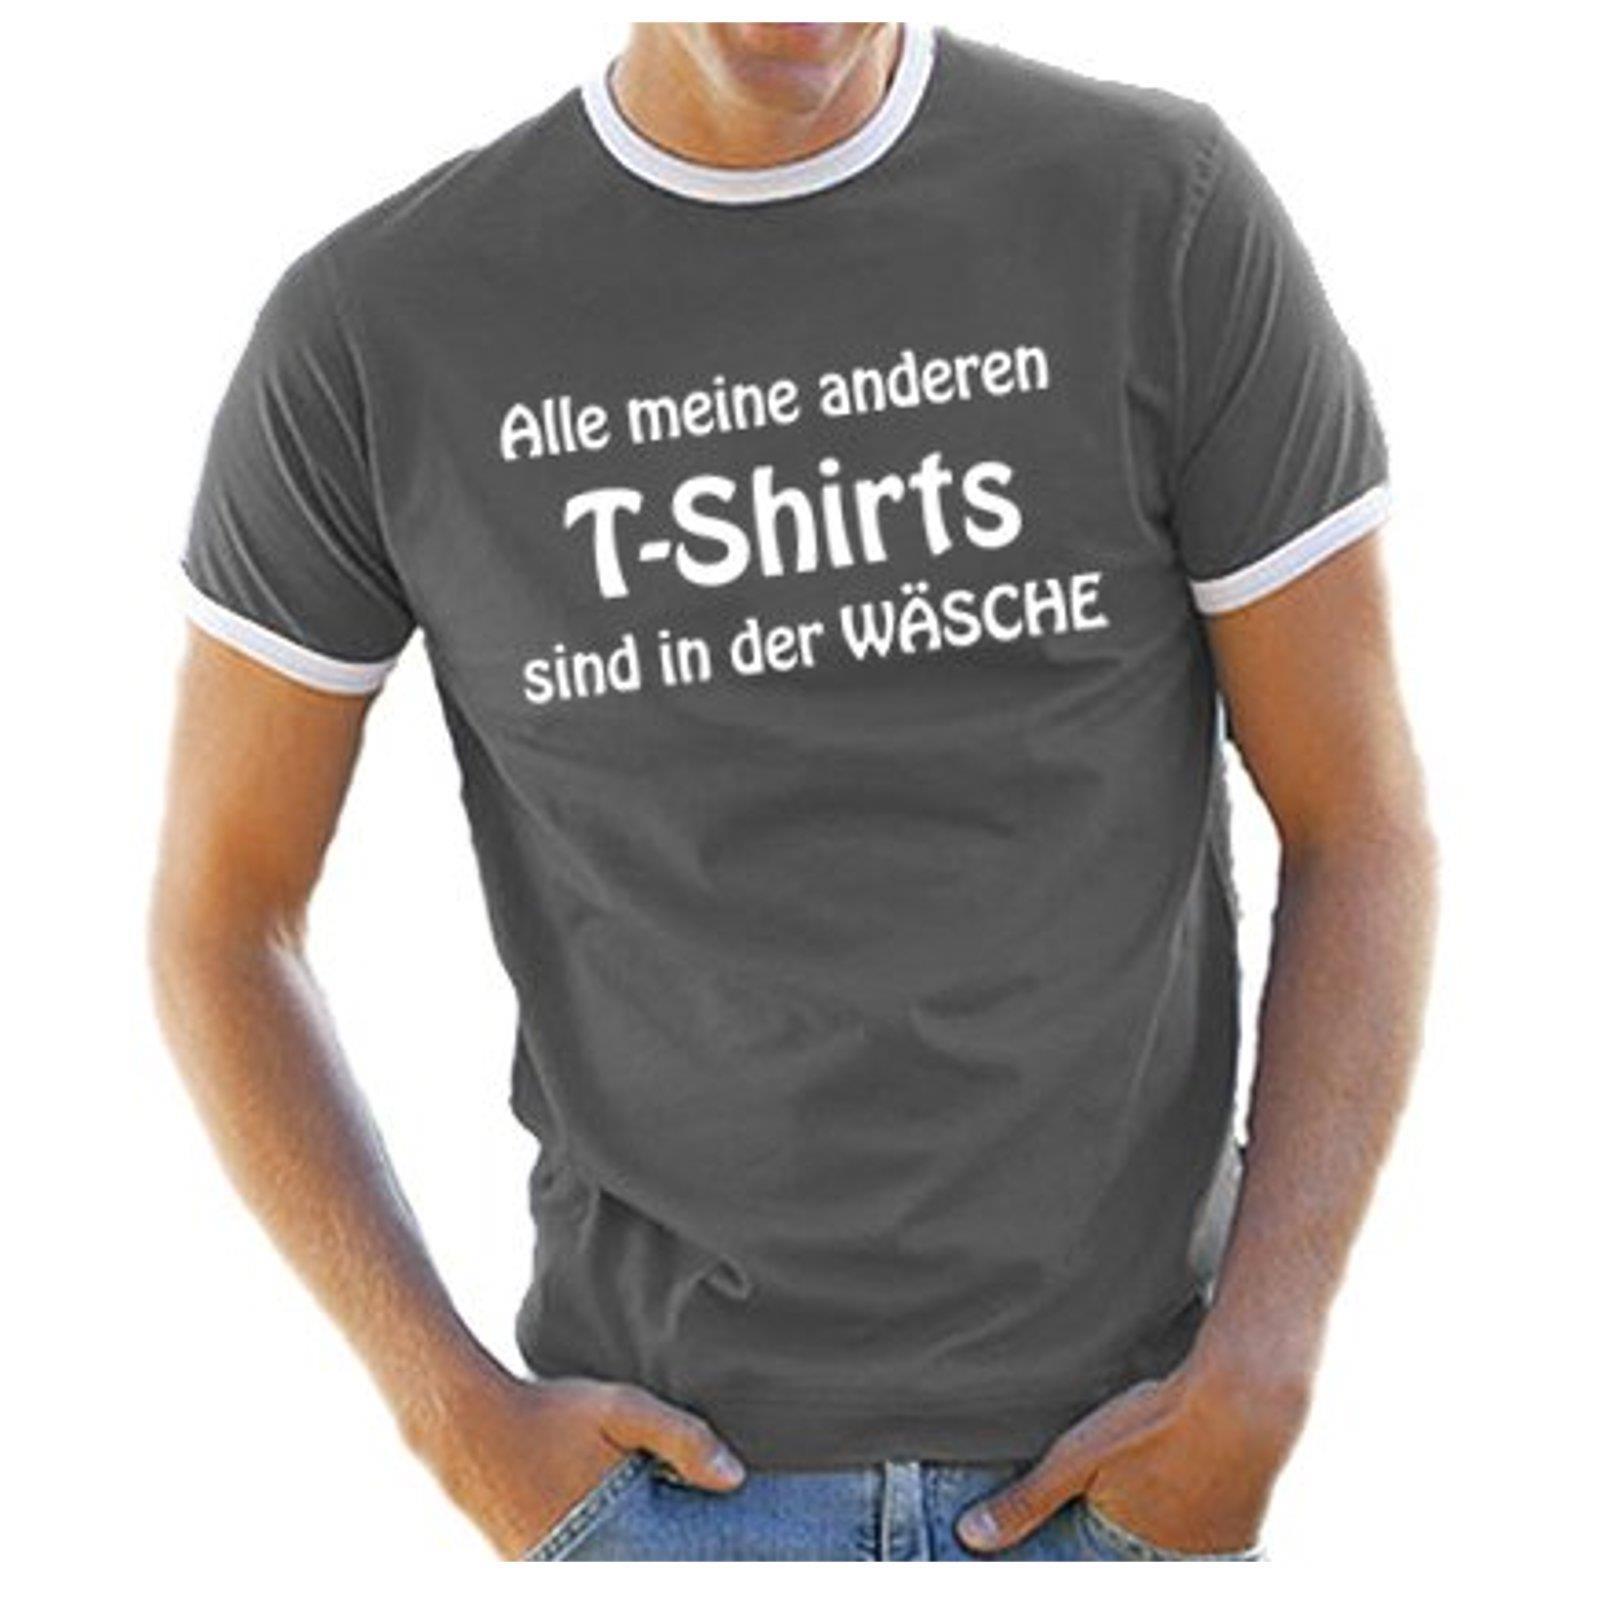 46+ Lustige sprueche t shirt maenner information